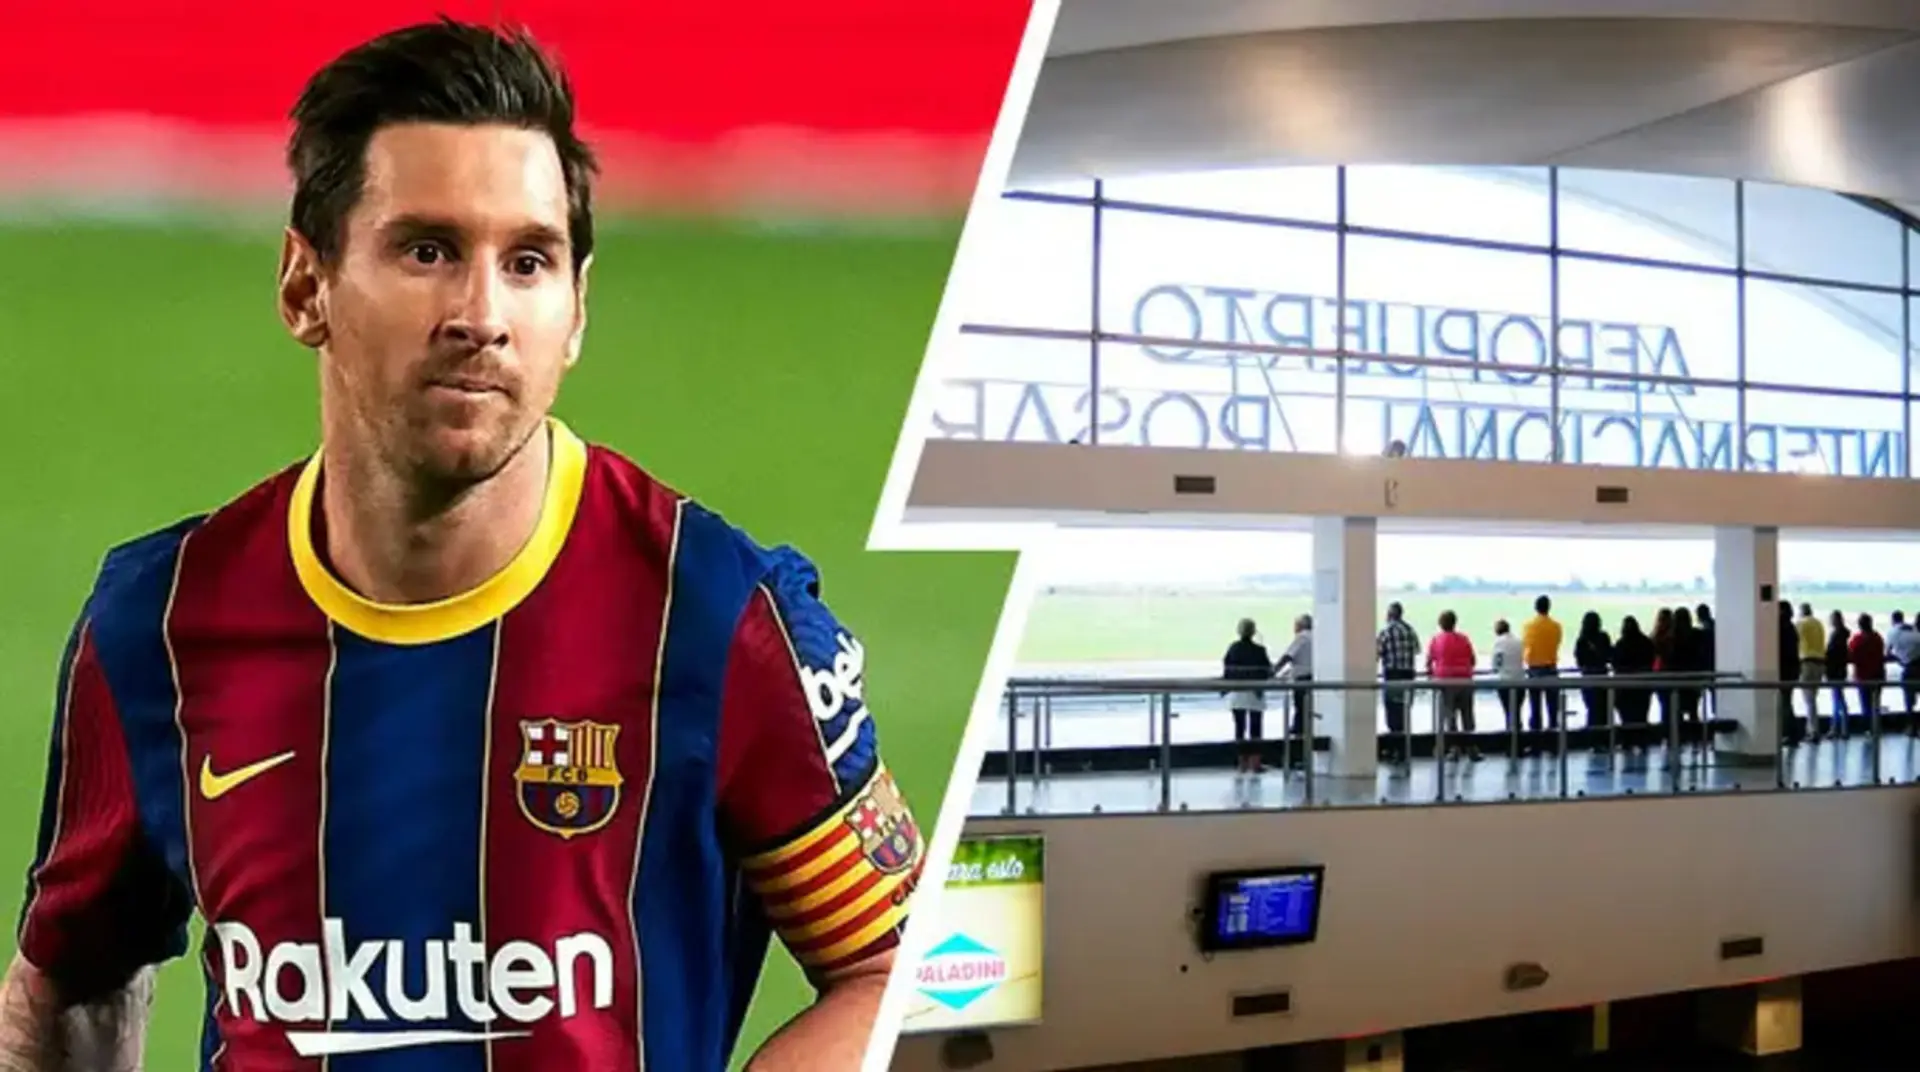 El vuelo de Messi se retrasa por amenaza de bomba en el aeropuerto de Rosario